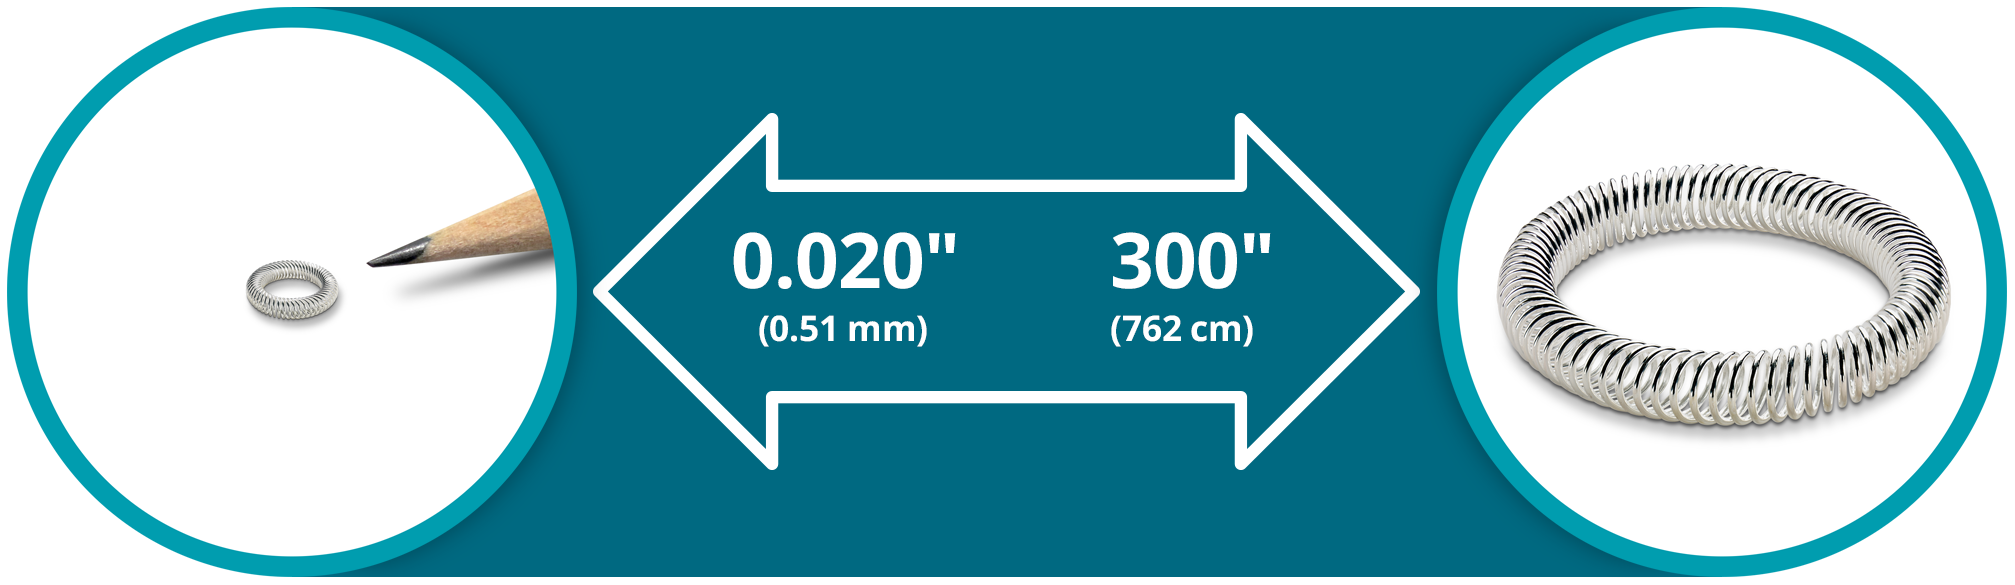 12-35 Leobtain Ressorts à Compression Springs de Compression en Acier à Ressort d/'utilisation Industrielle de Haute qualité MM de diamètre de x 250mm diamètre de Fil de 2,5 mm x